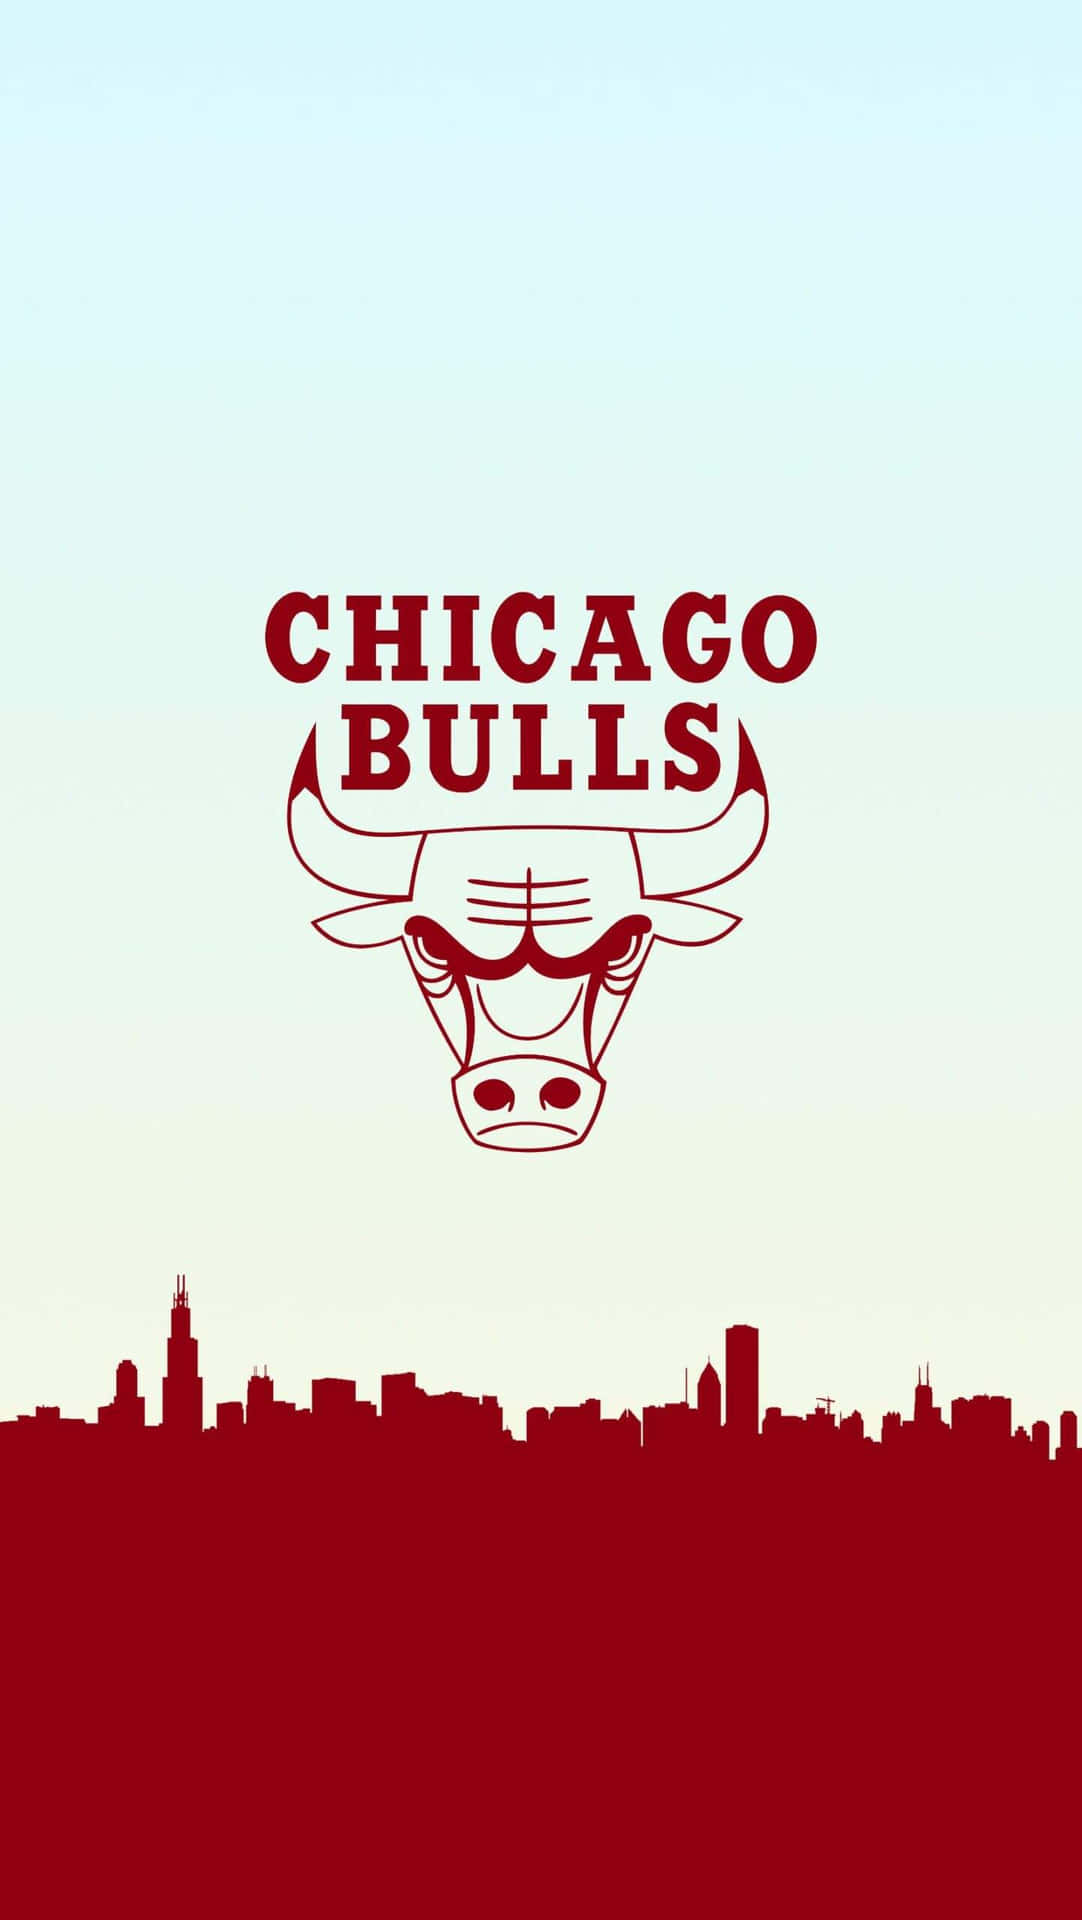 Tauchemit Deinem Handy In Die Welt Der Chicago Bulls Ein. Wallpaper